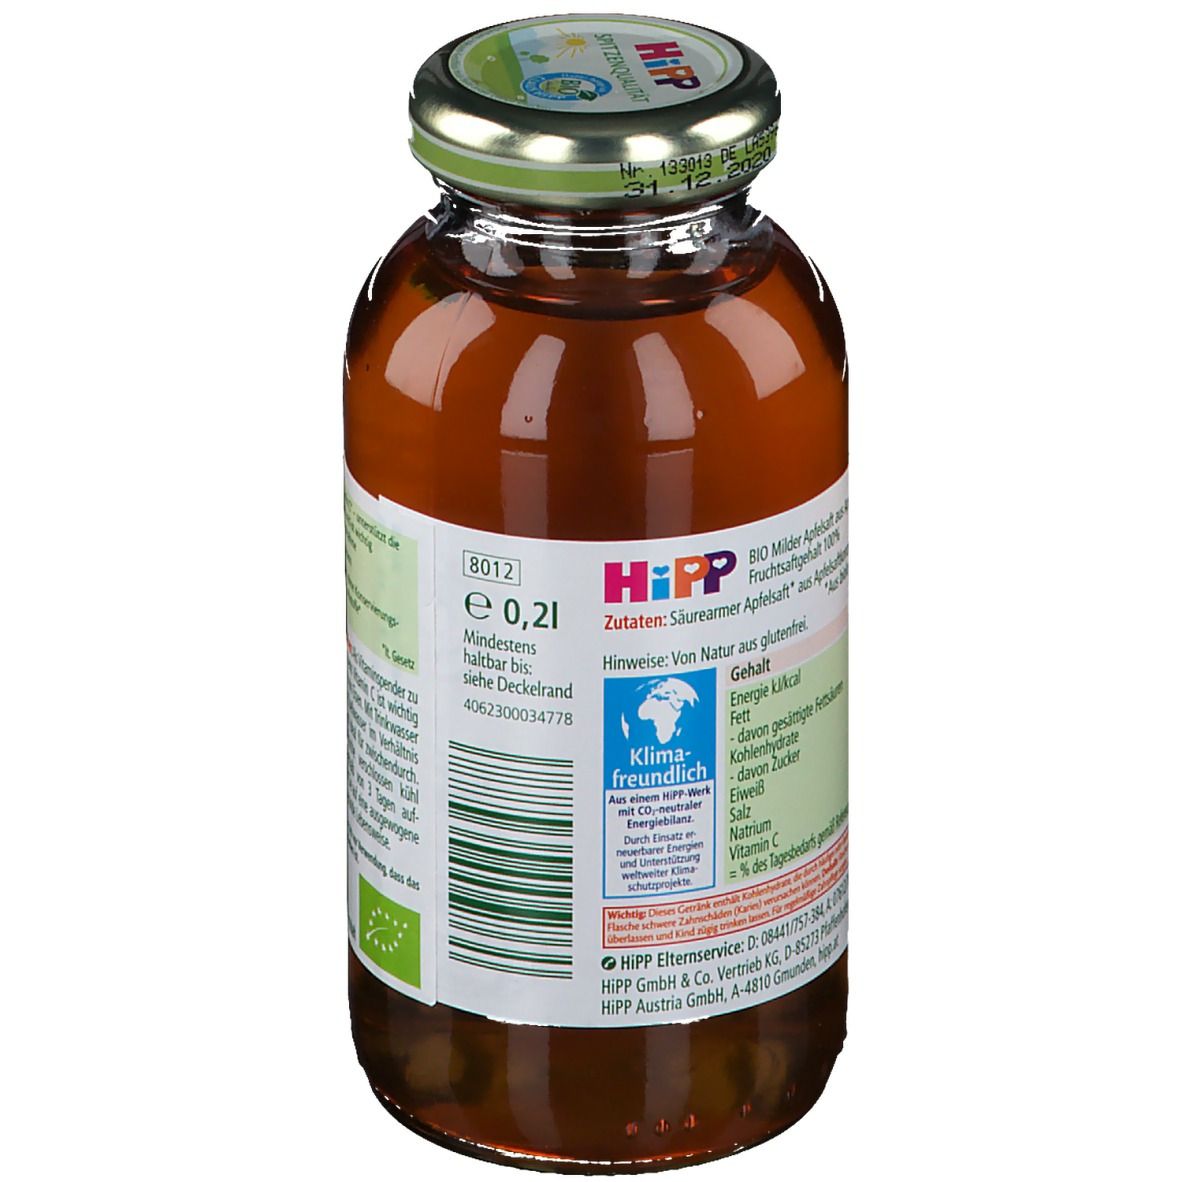 Hipp 100% Bio Saft Milder Apfel ab dem 5. Monat